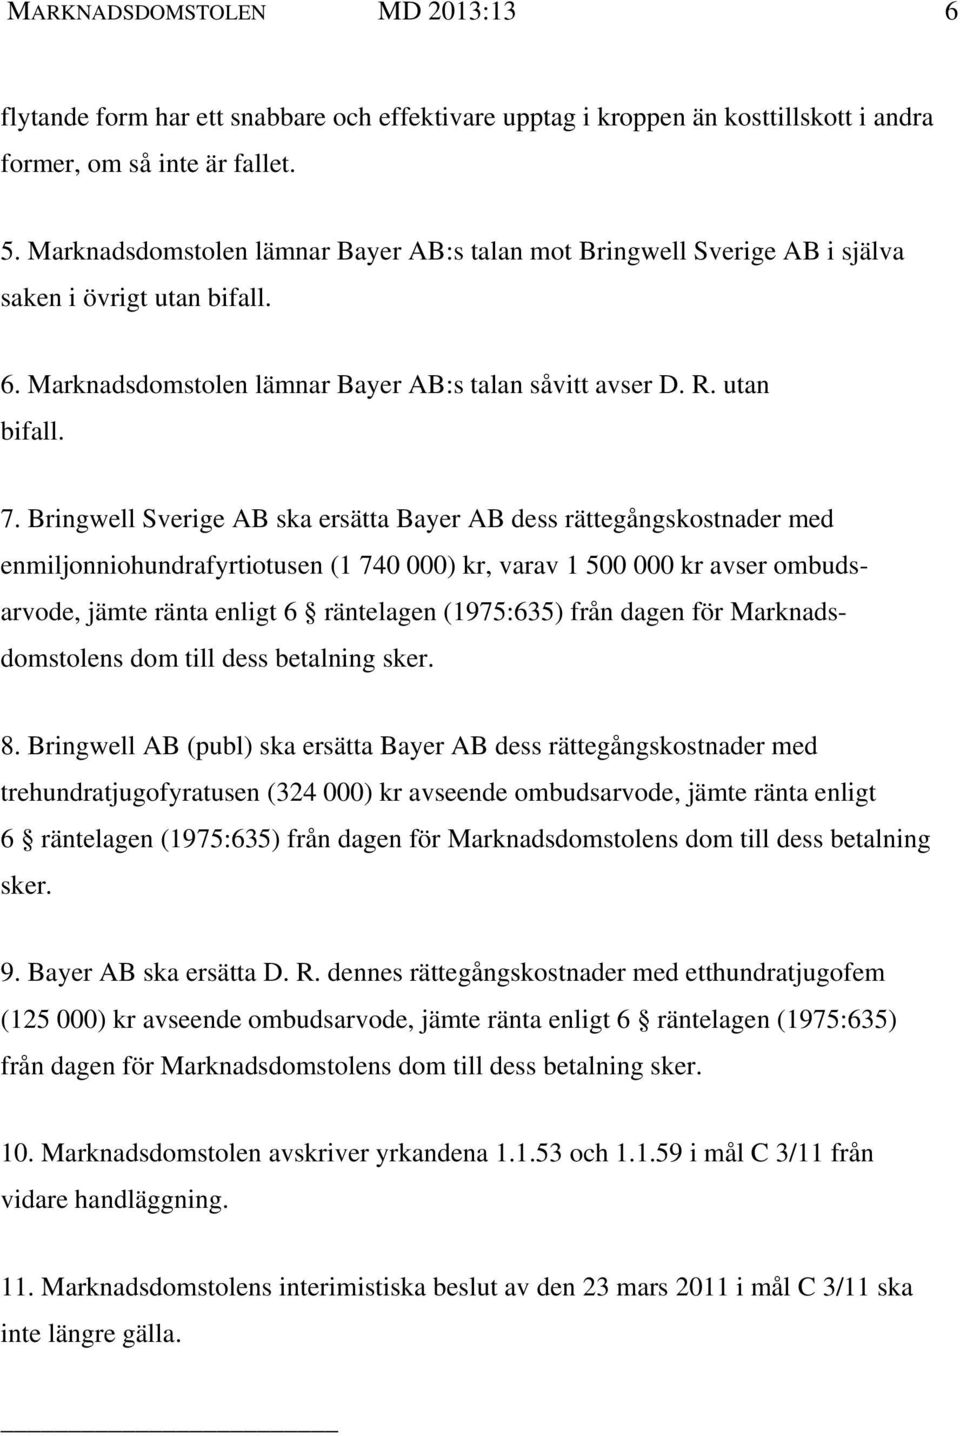 Bringwell Sverige AB ska ersätta dess rättegångskostnader med enmiljonniohundrafyrtiotusen (1 740 000) kr, varav 1 500 000 kr avser ombudsarvode, jämte ränta enligt 6 räntelagen (1975:635) från dagen